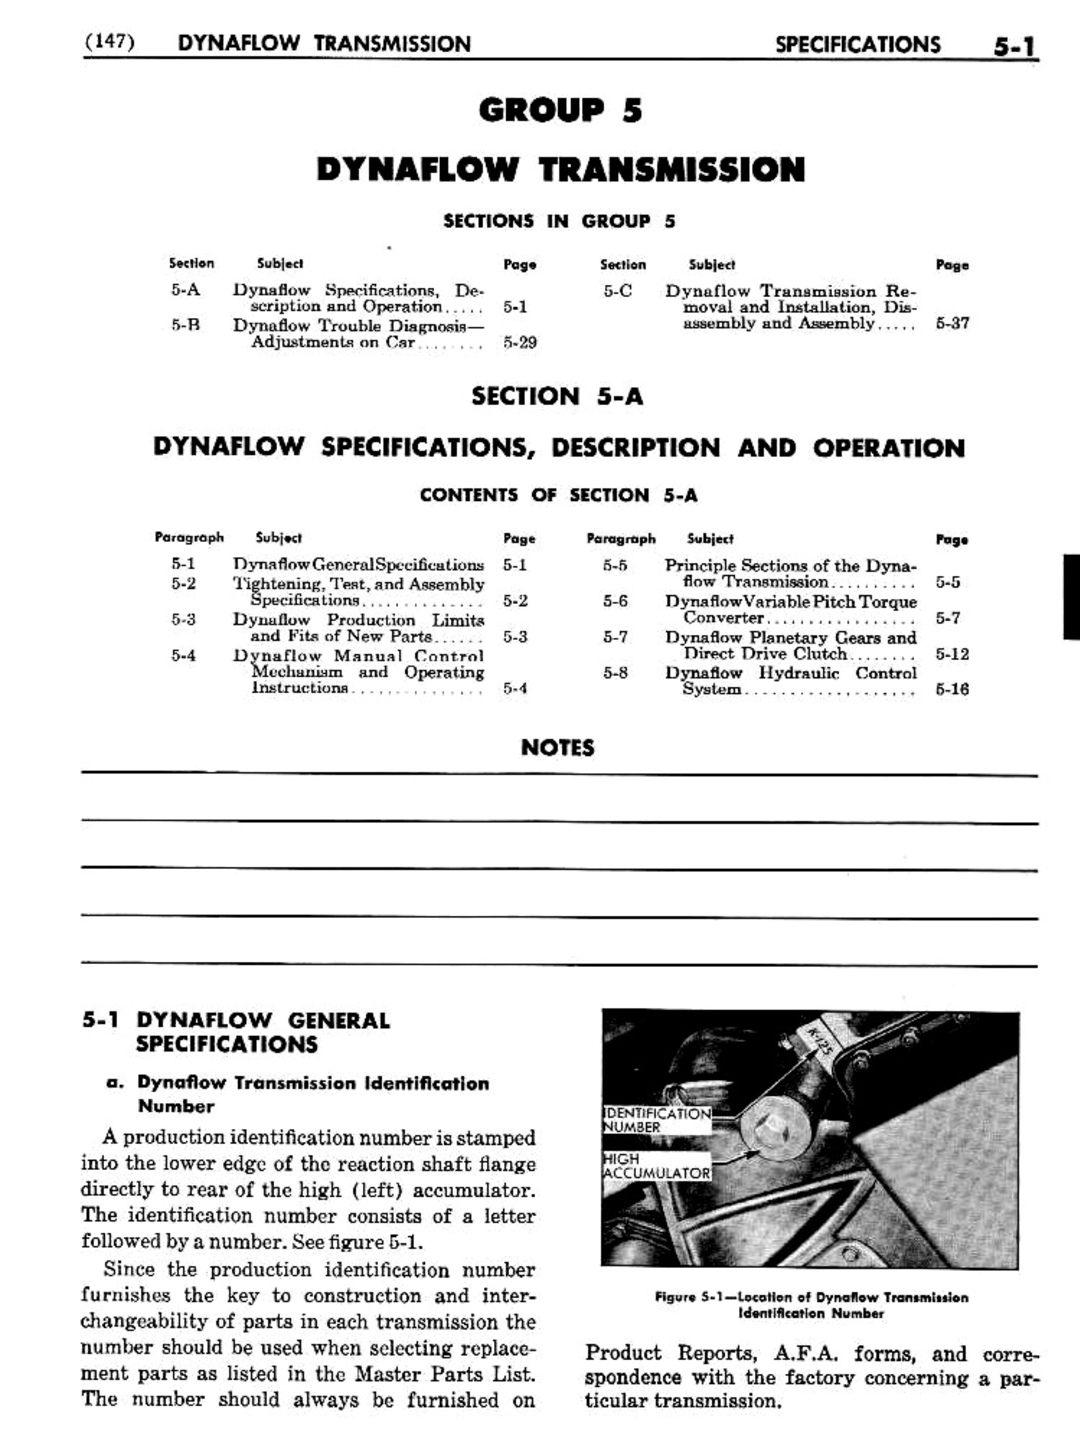 n_06 1956 Buick Shop Manual - Dynaflow-001-001.jpg